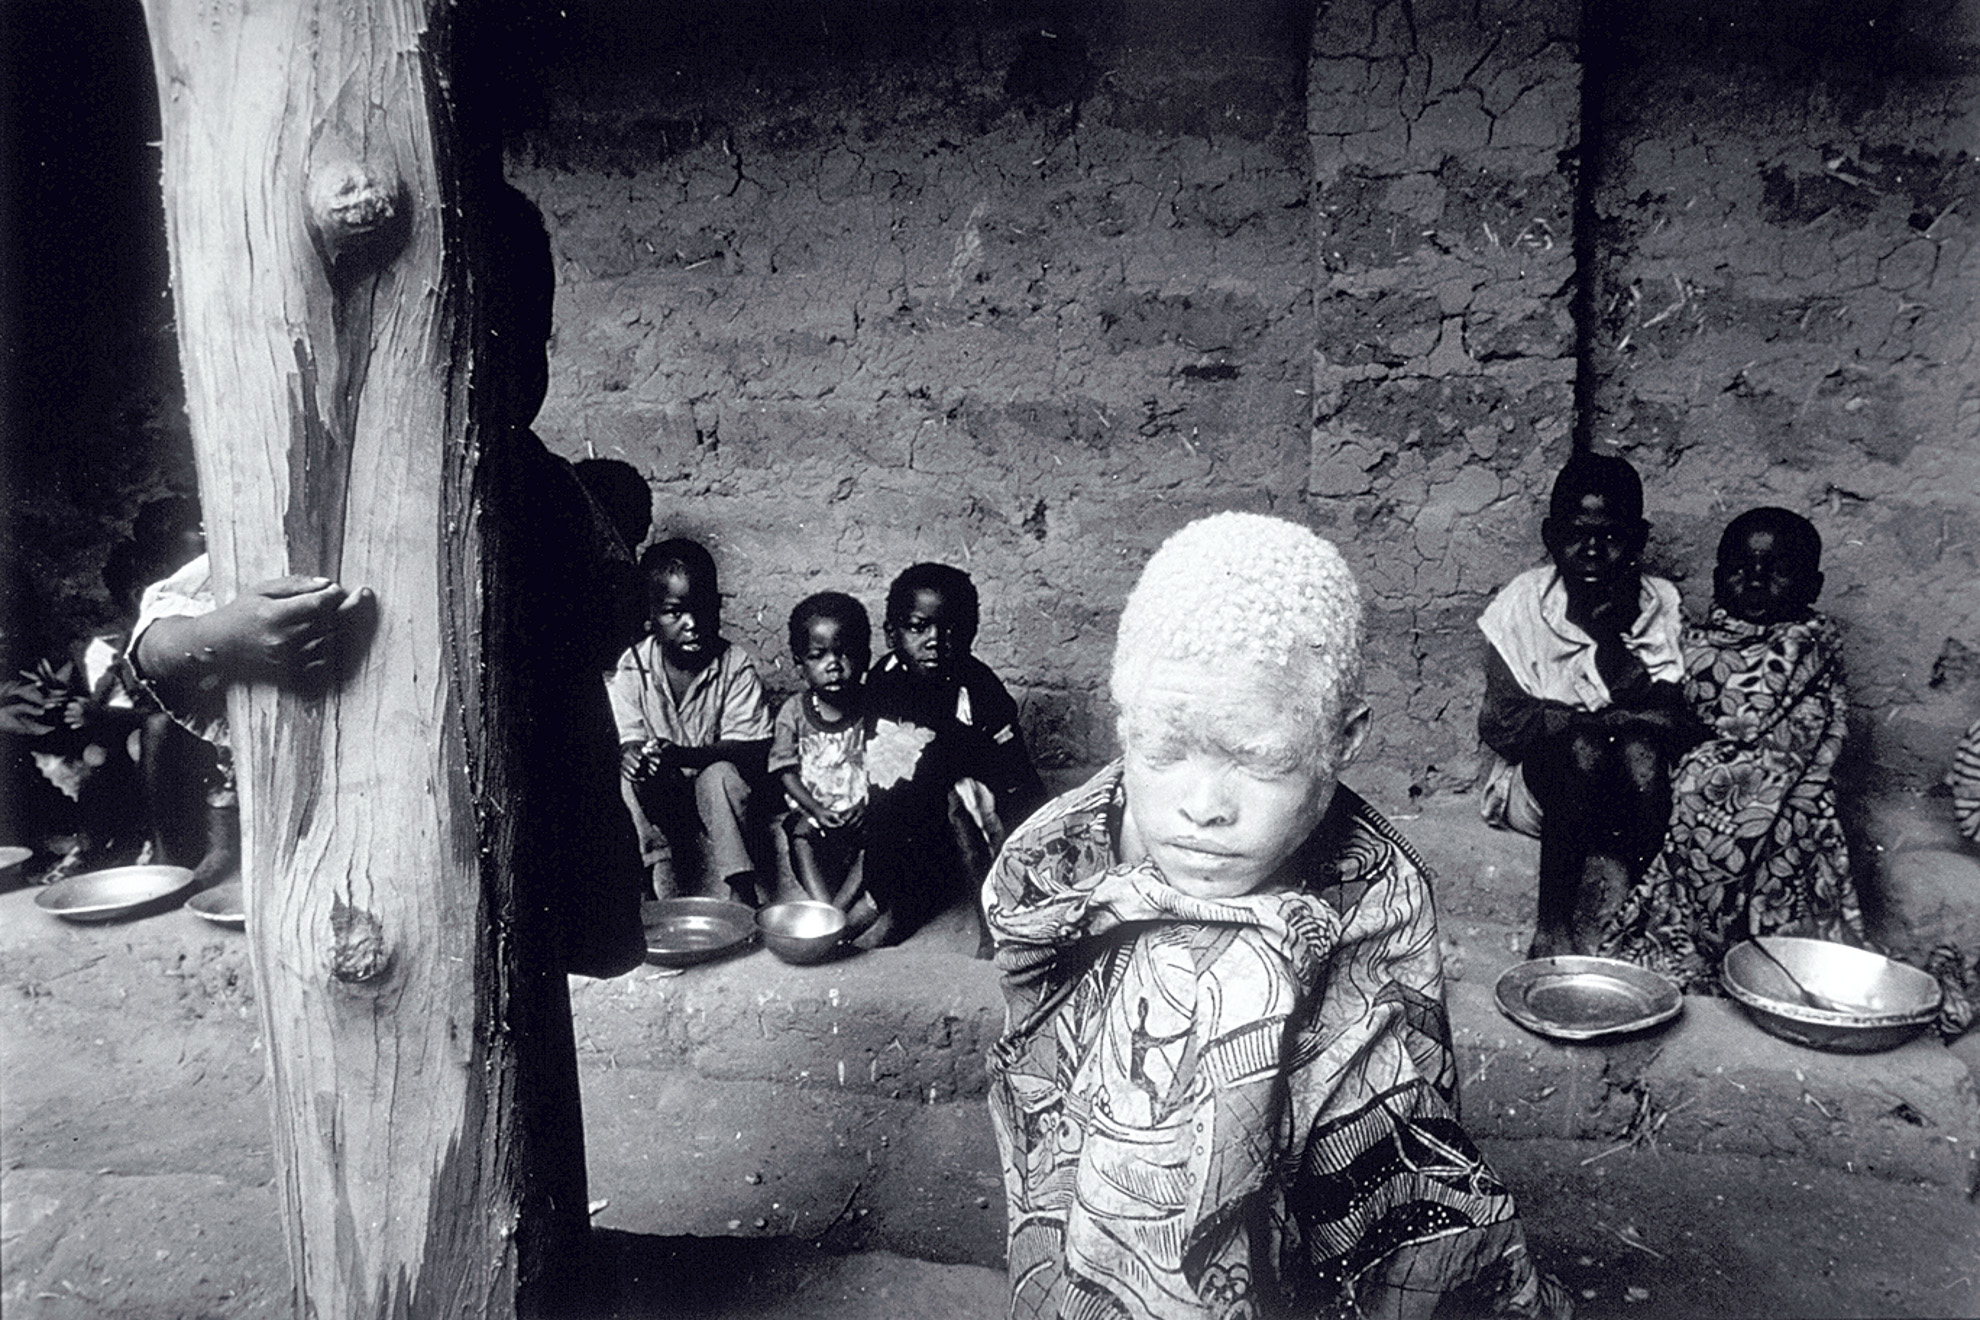 Los niños reciben alimentos del Programa Mundial de Alimentos (PMA) en el centro de acogida de Malange. La niña albina ha sido apartada como una extraña entre su propia gente.